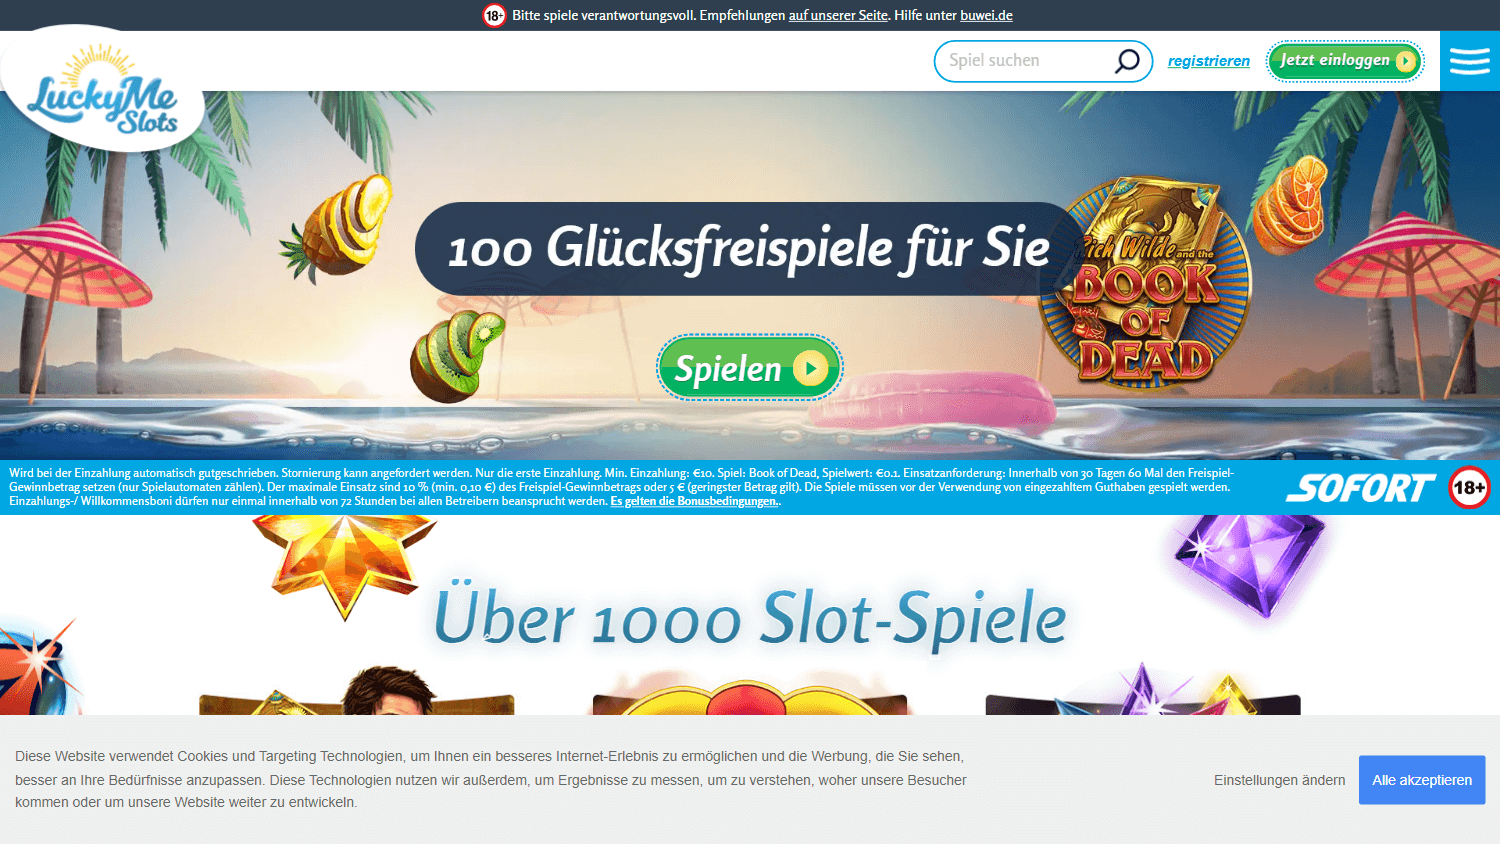 lucky_me_slots_casino_de_homepage_desktop